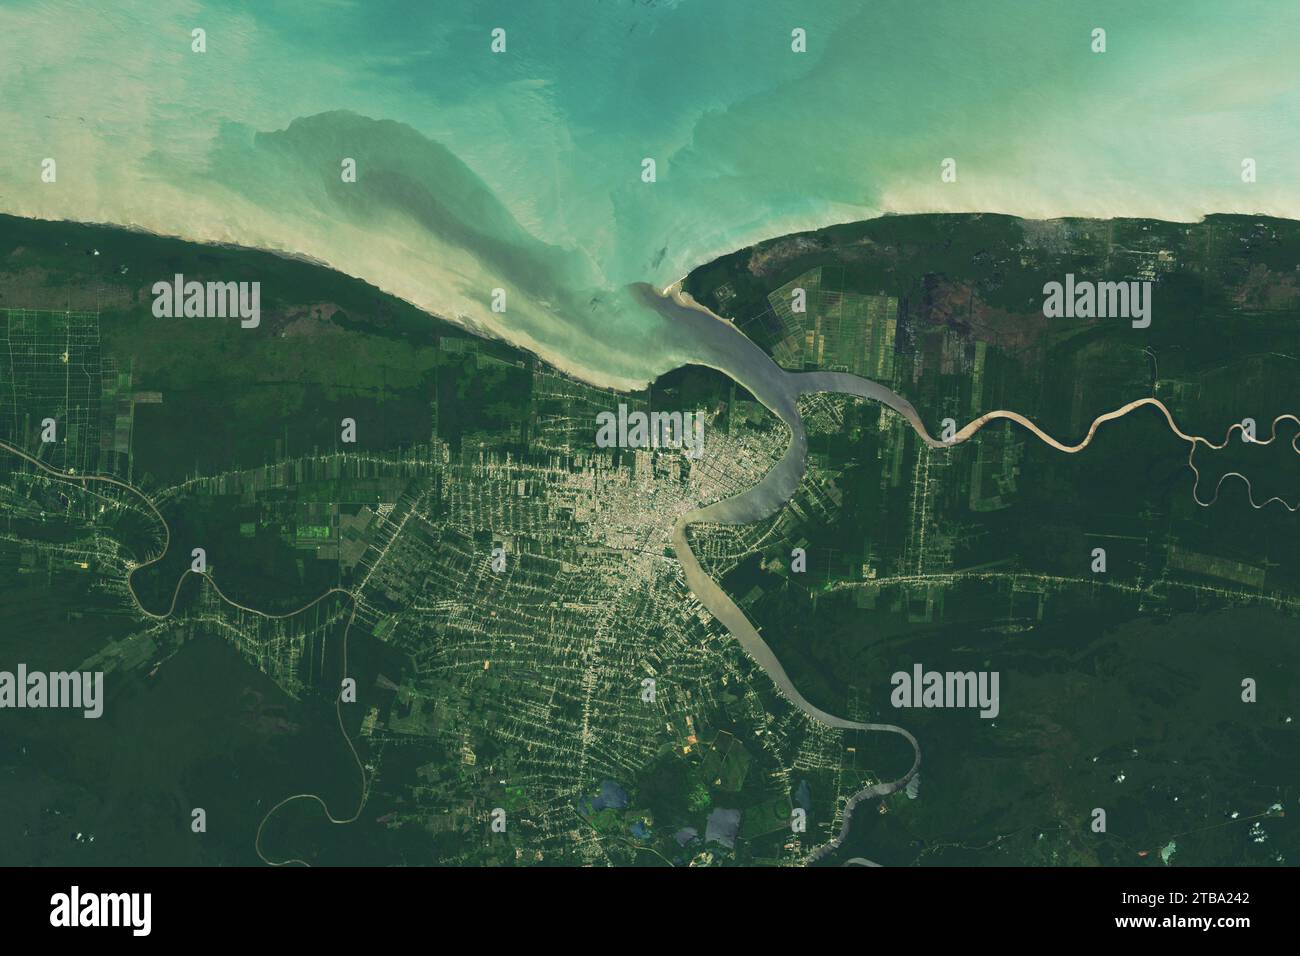 Imagen satelital del río Surinam y la ciudad de Paramaribo. Foto de stock